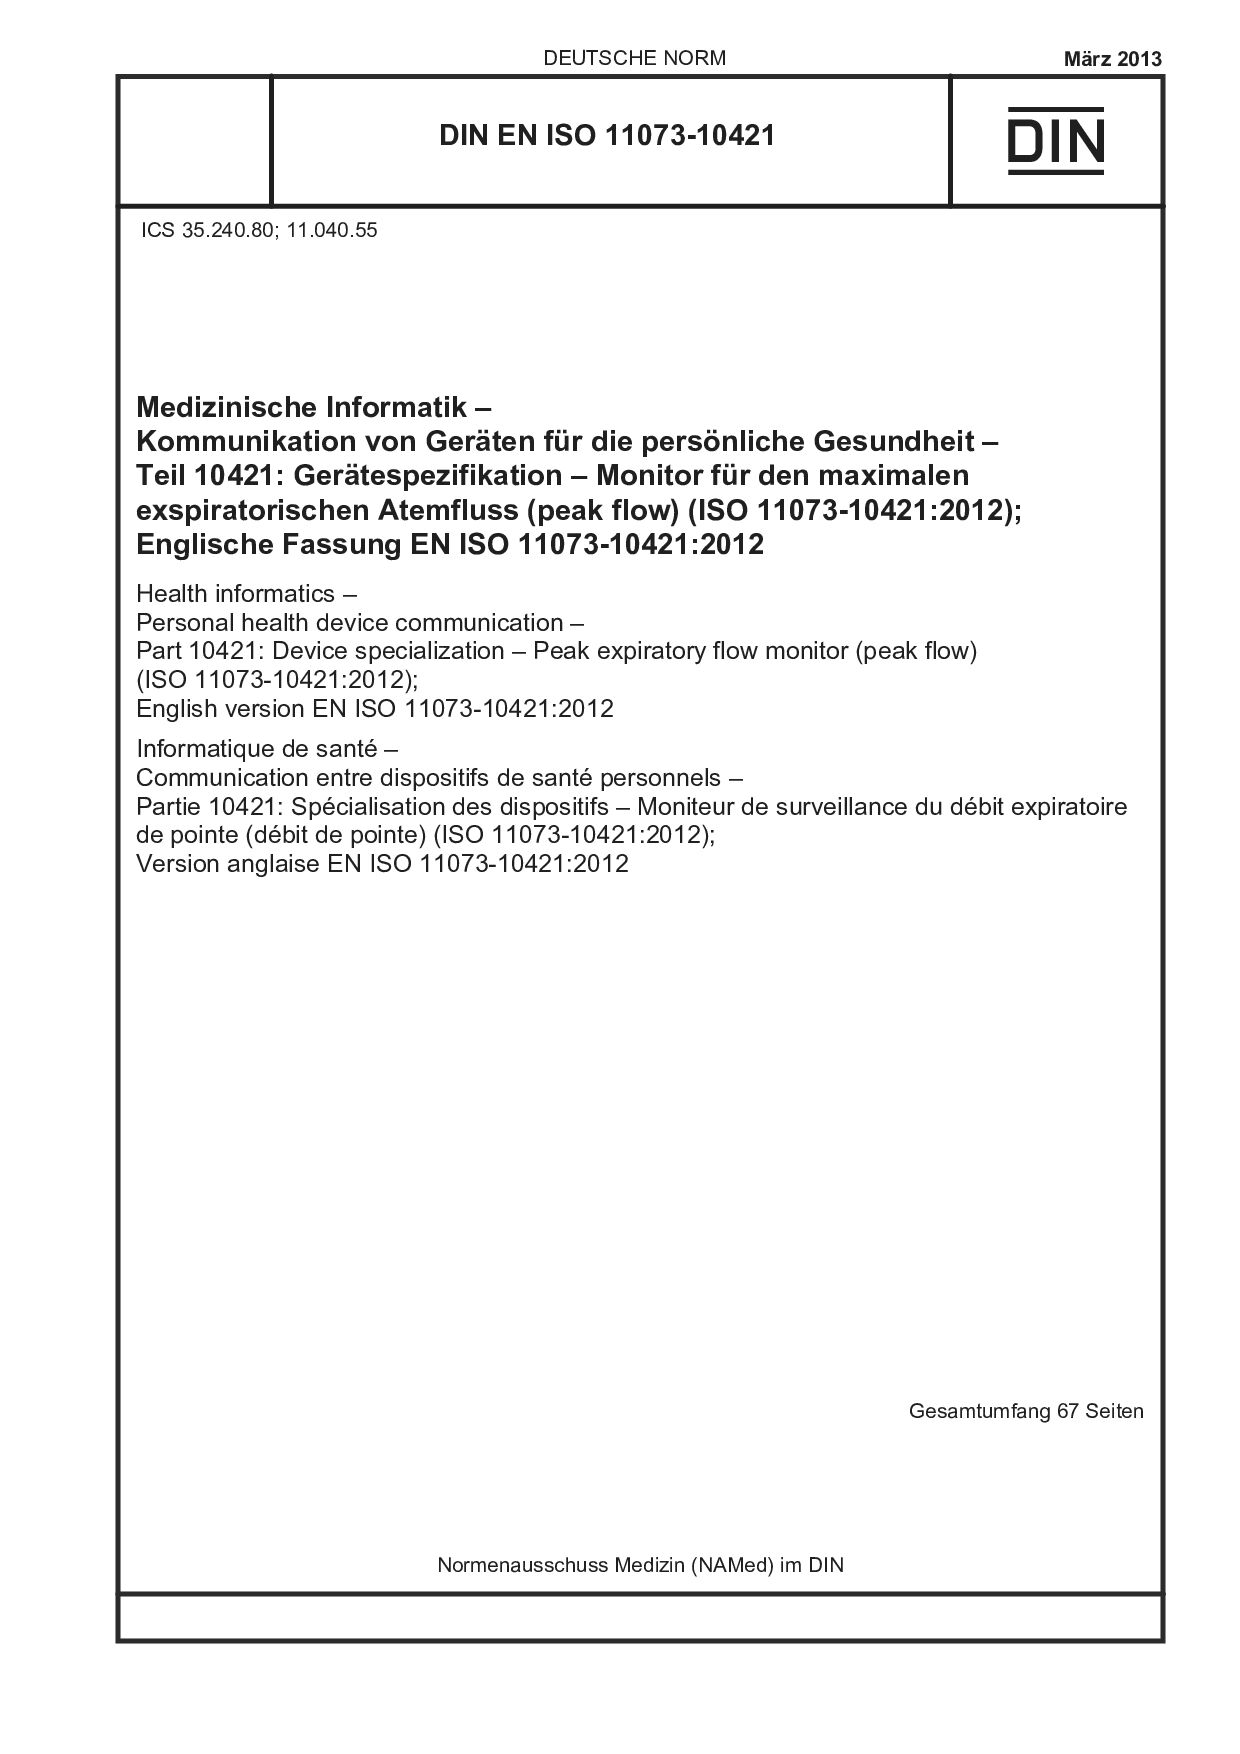 DIN EN ISO 11073-10421:2013